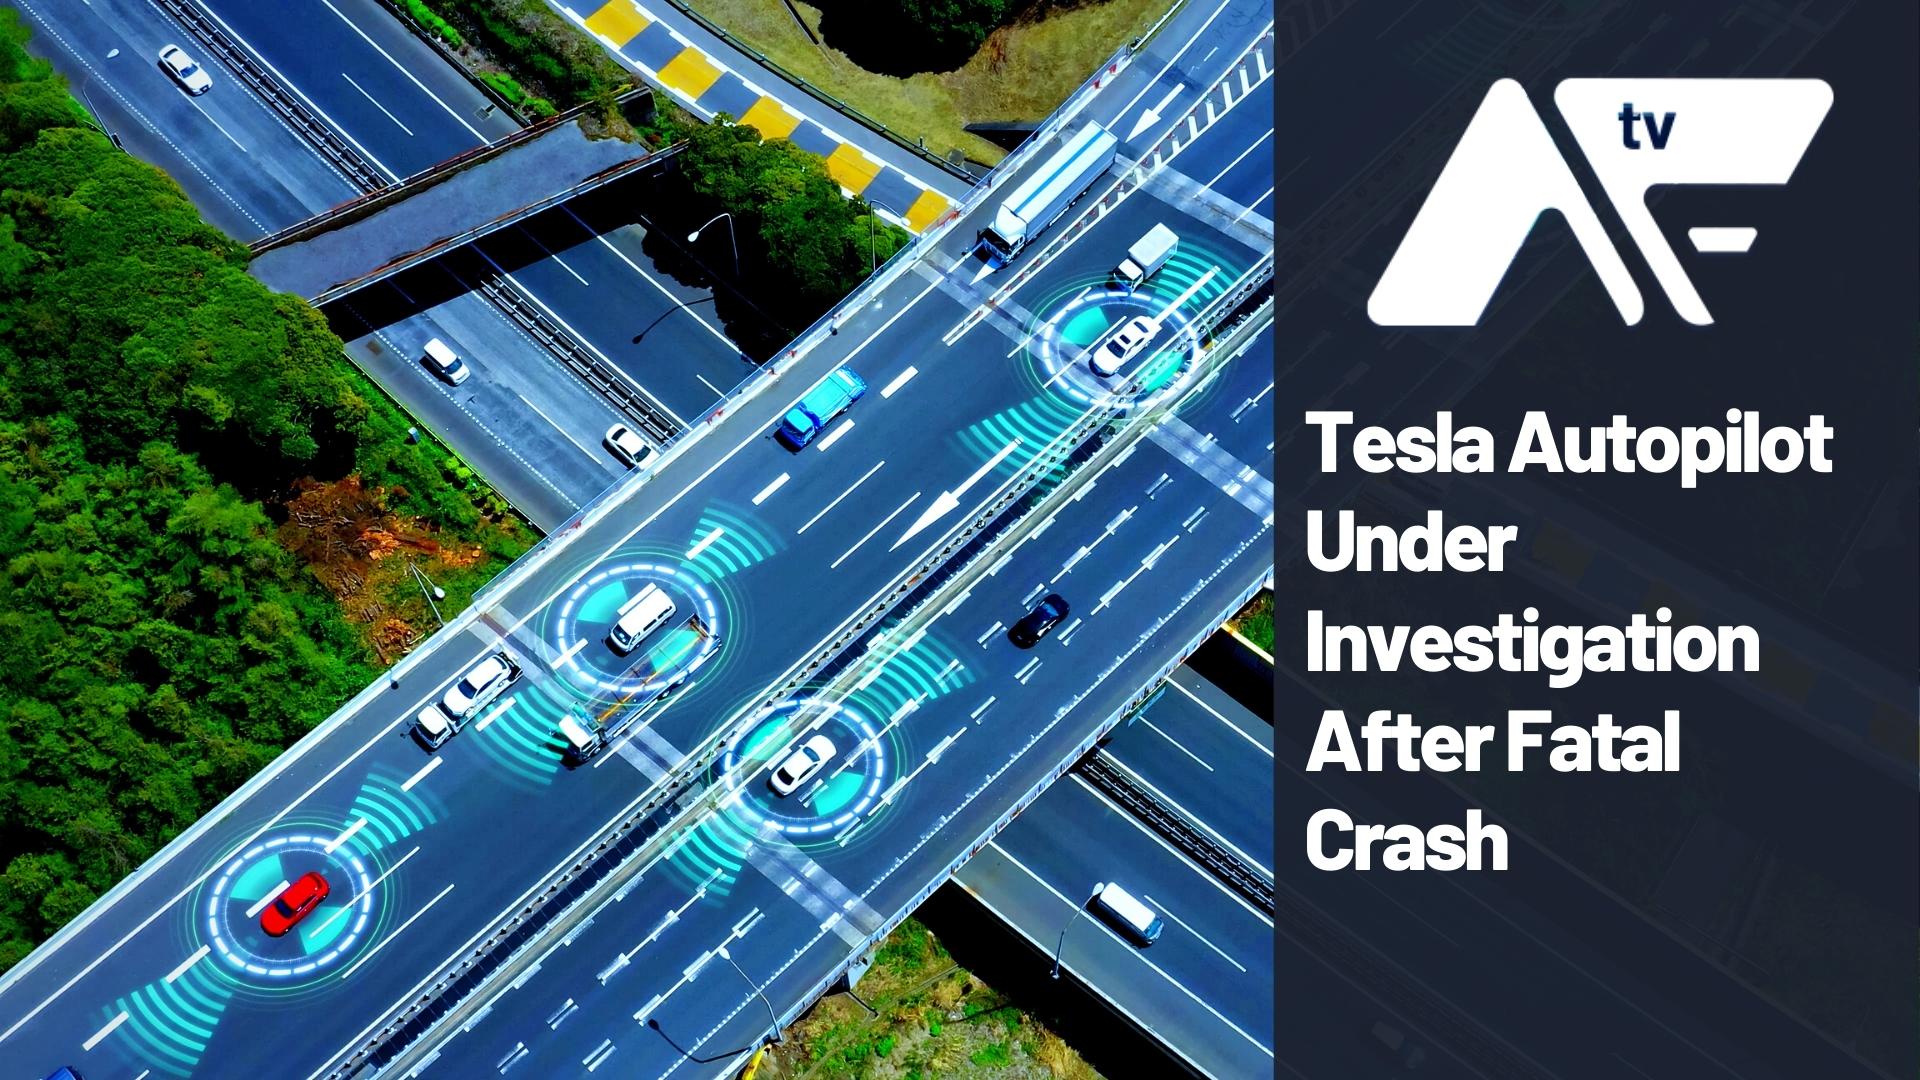 AF TV – Tesla Autopilot Under Investigation After Fatal Crash